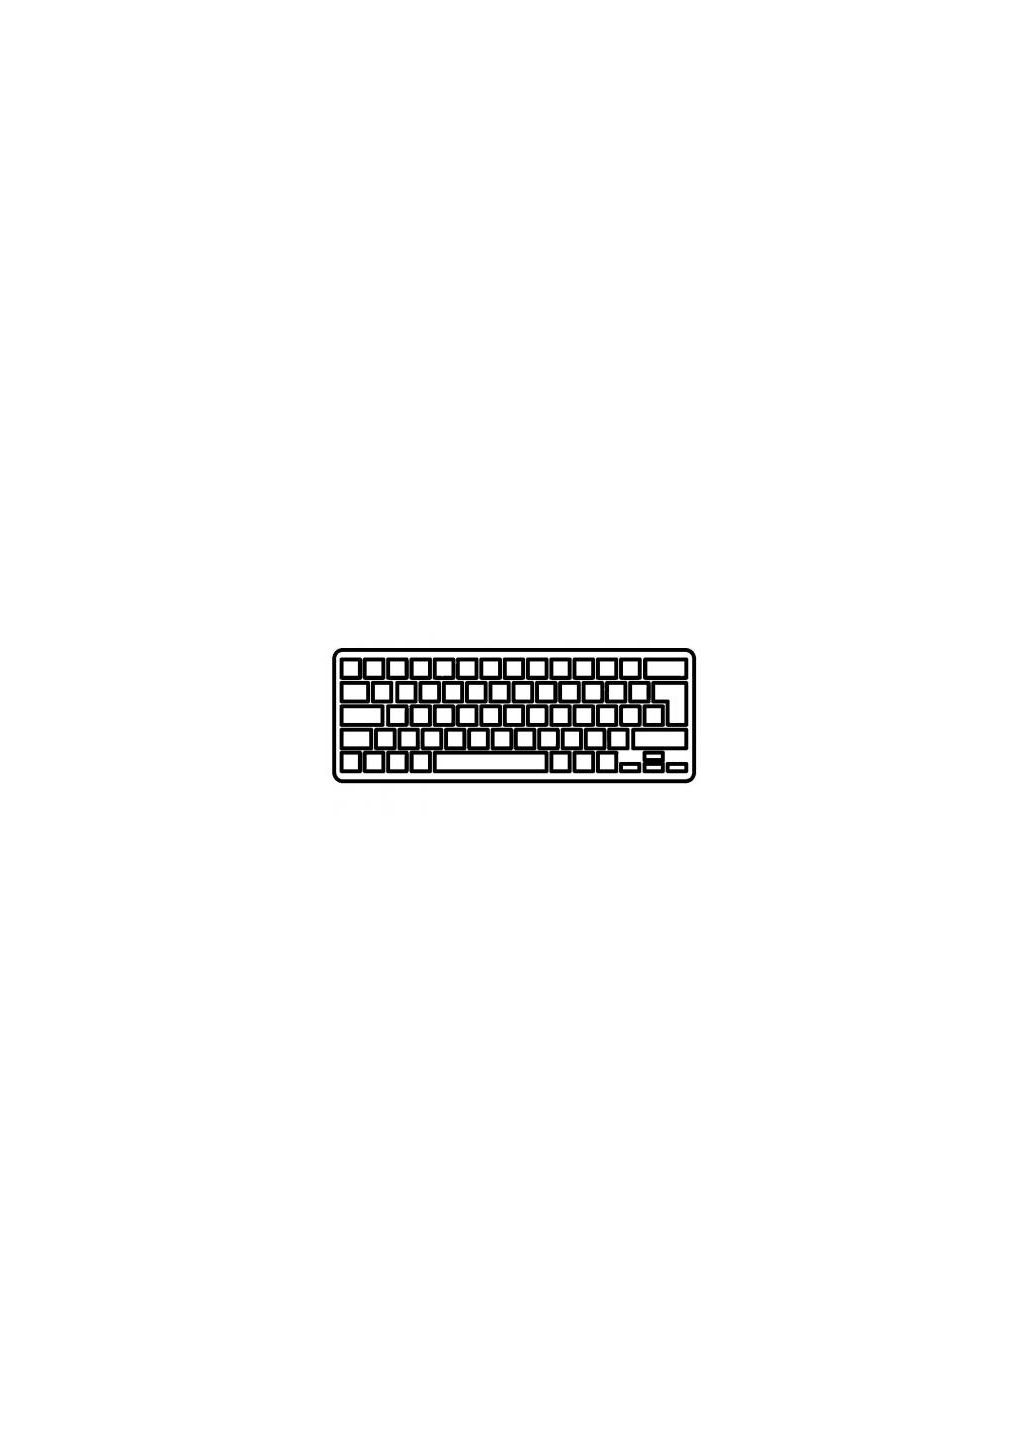 Клавиатура ноутбука Aspire V5122P Series черная без рамки UA (A43637) Acer aspire v5-122p series черная без рамки ua (276707566)